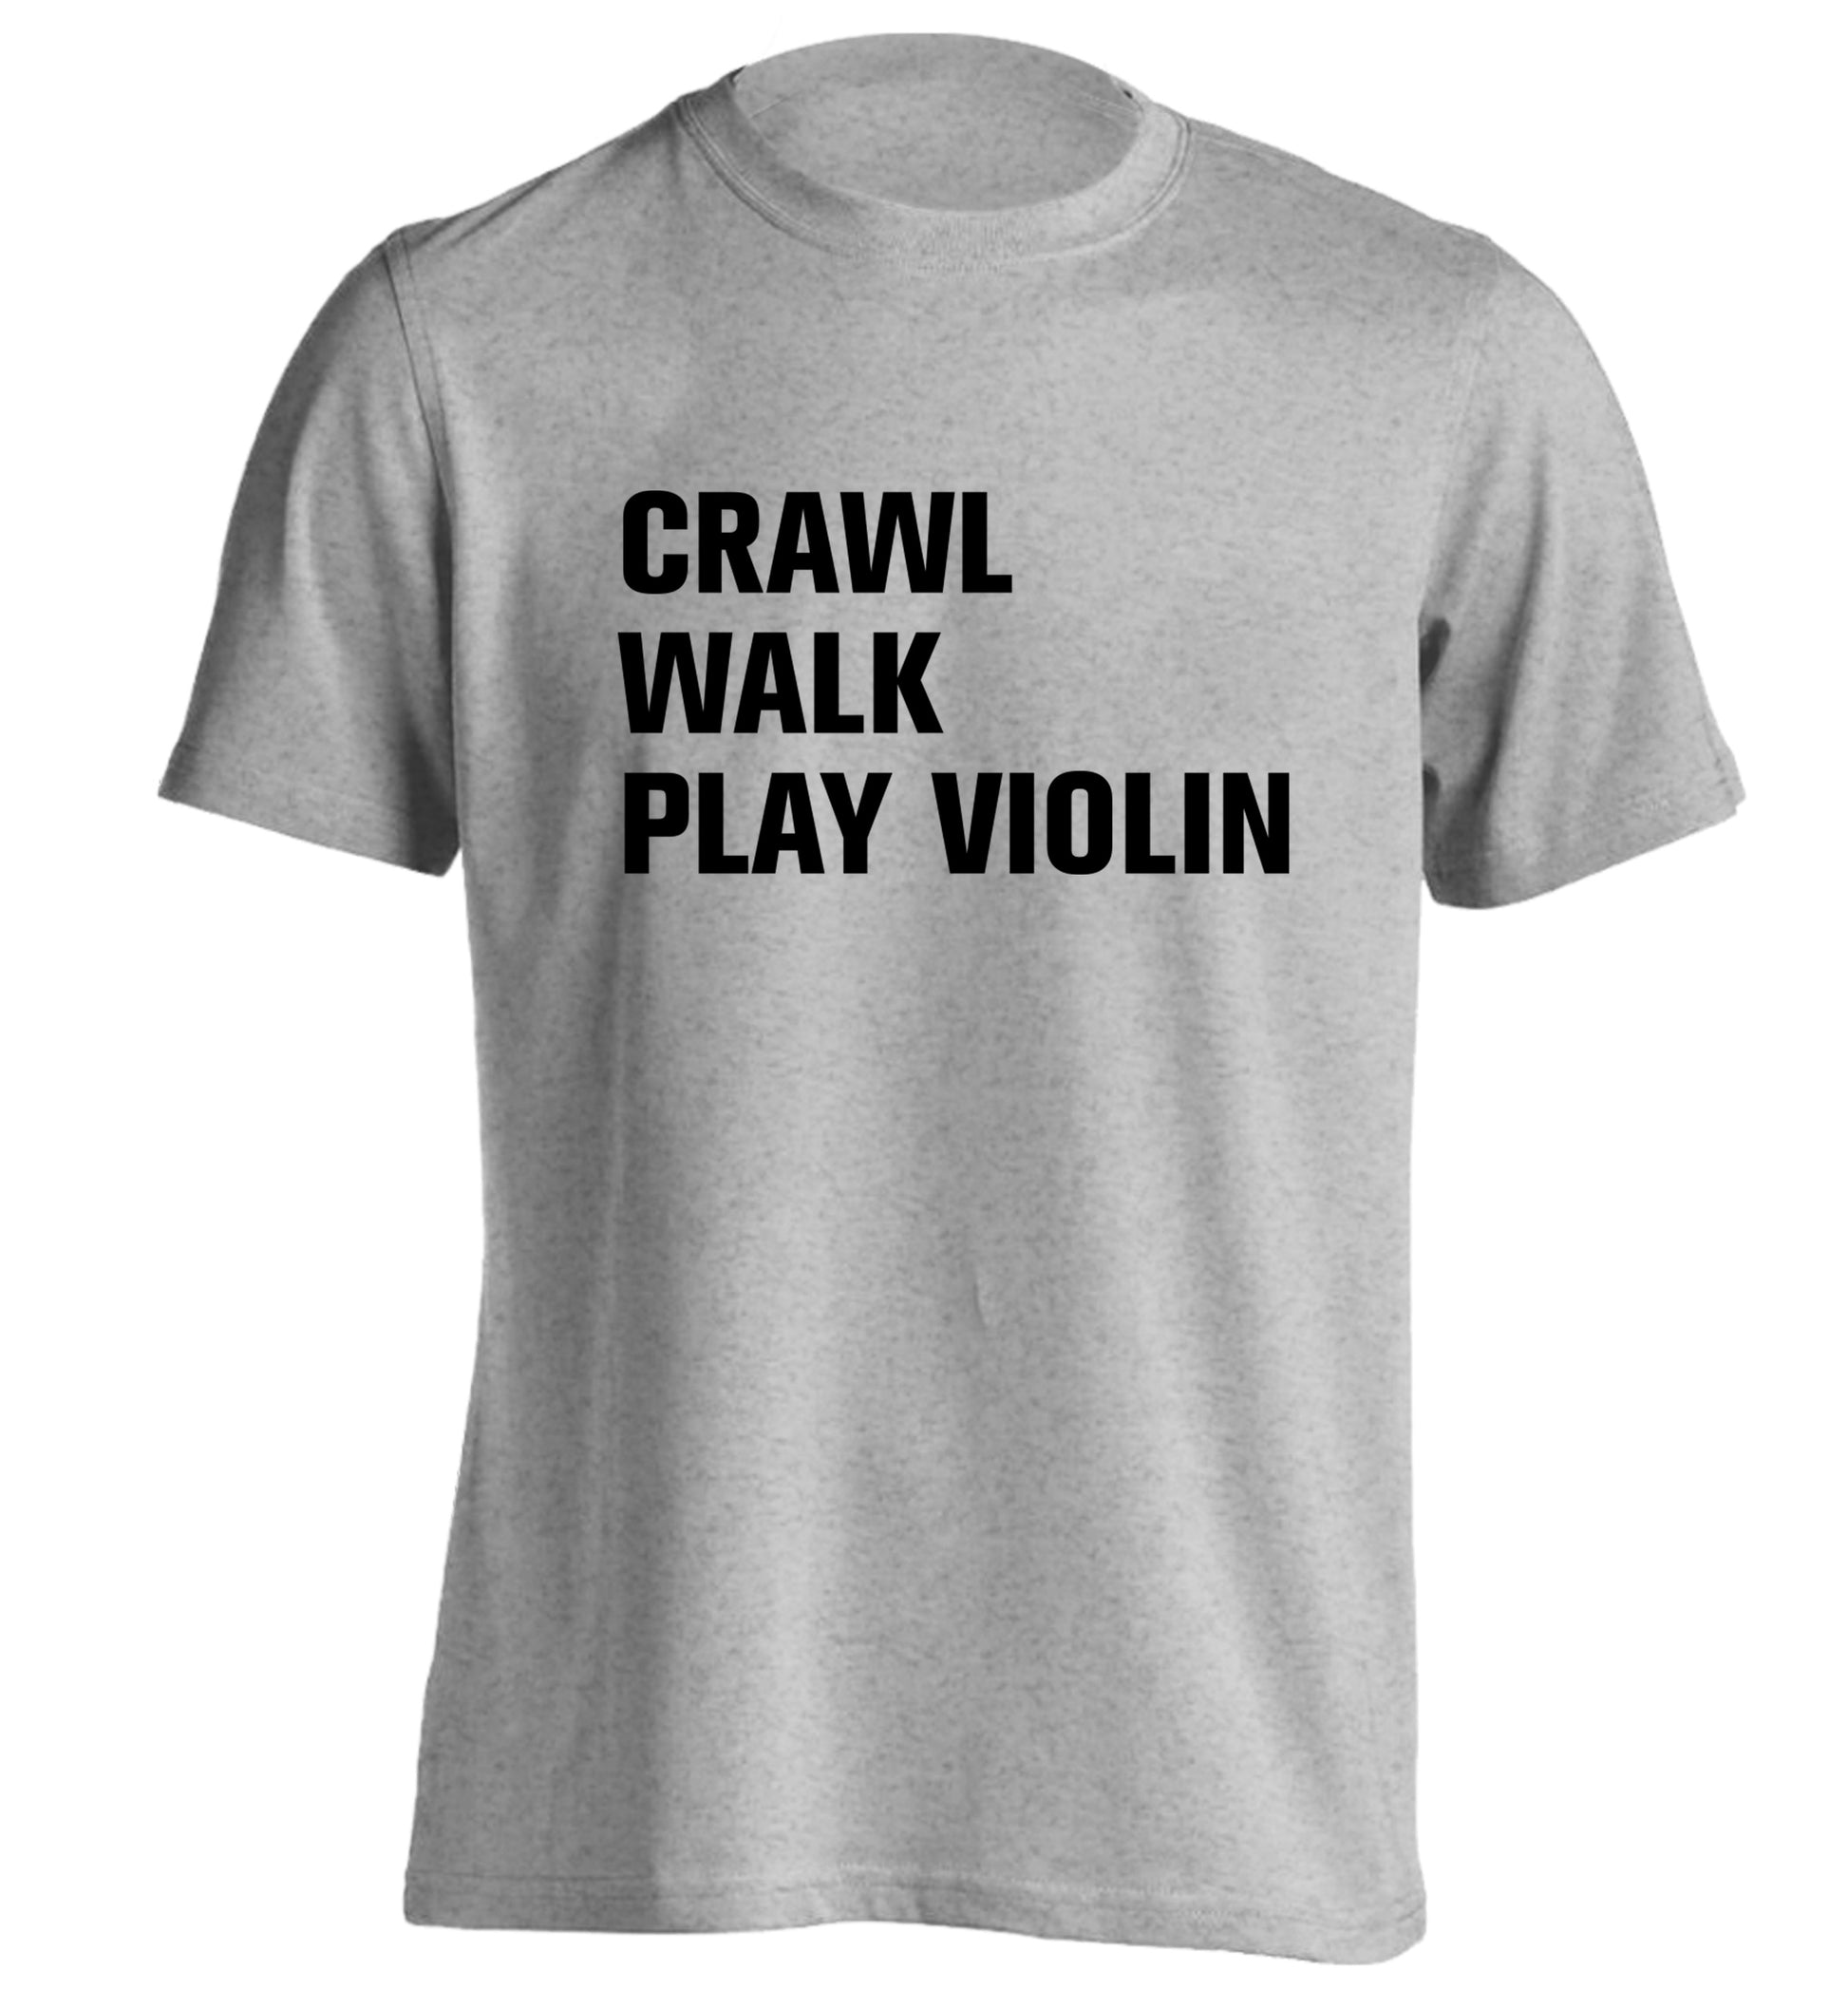 Crawl Walk Play Violin adults unisex grey Tshirt 2XL